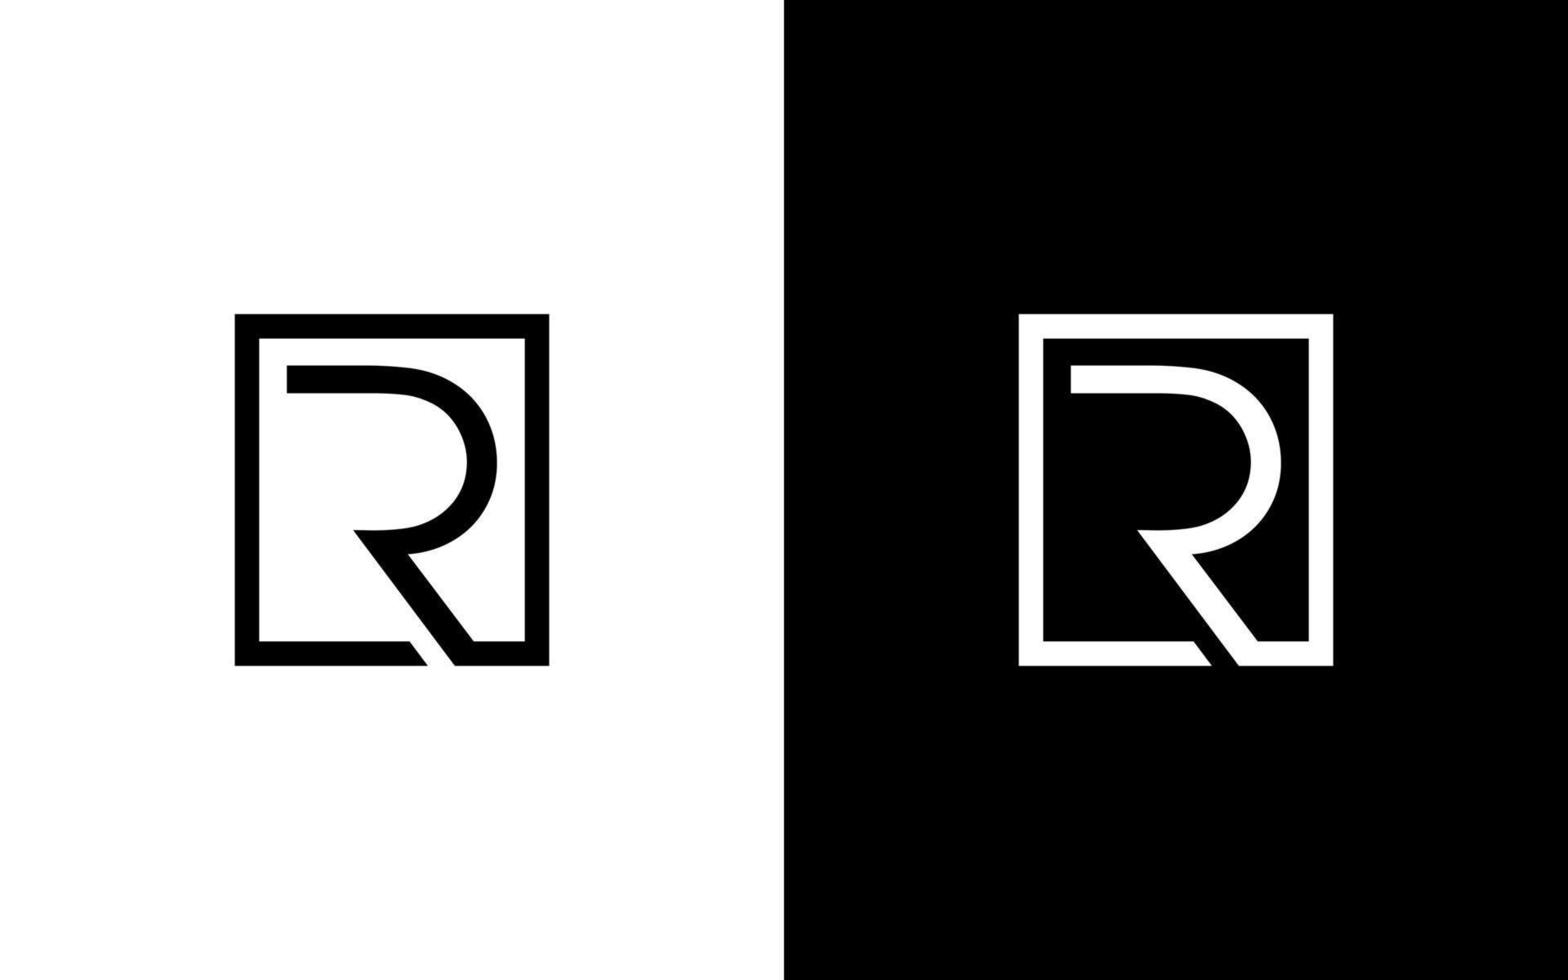 arquivo de vetor livre de design de logotipo letra r.